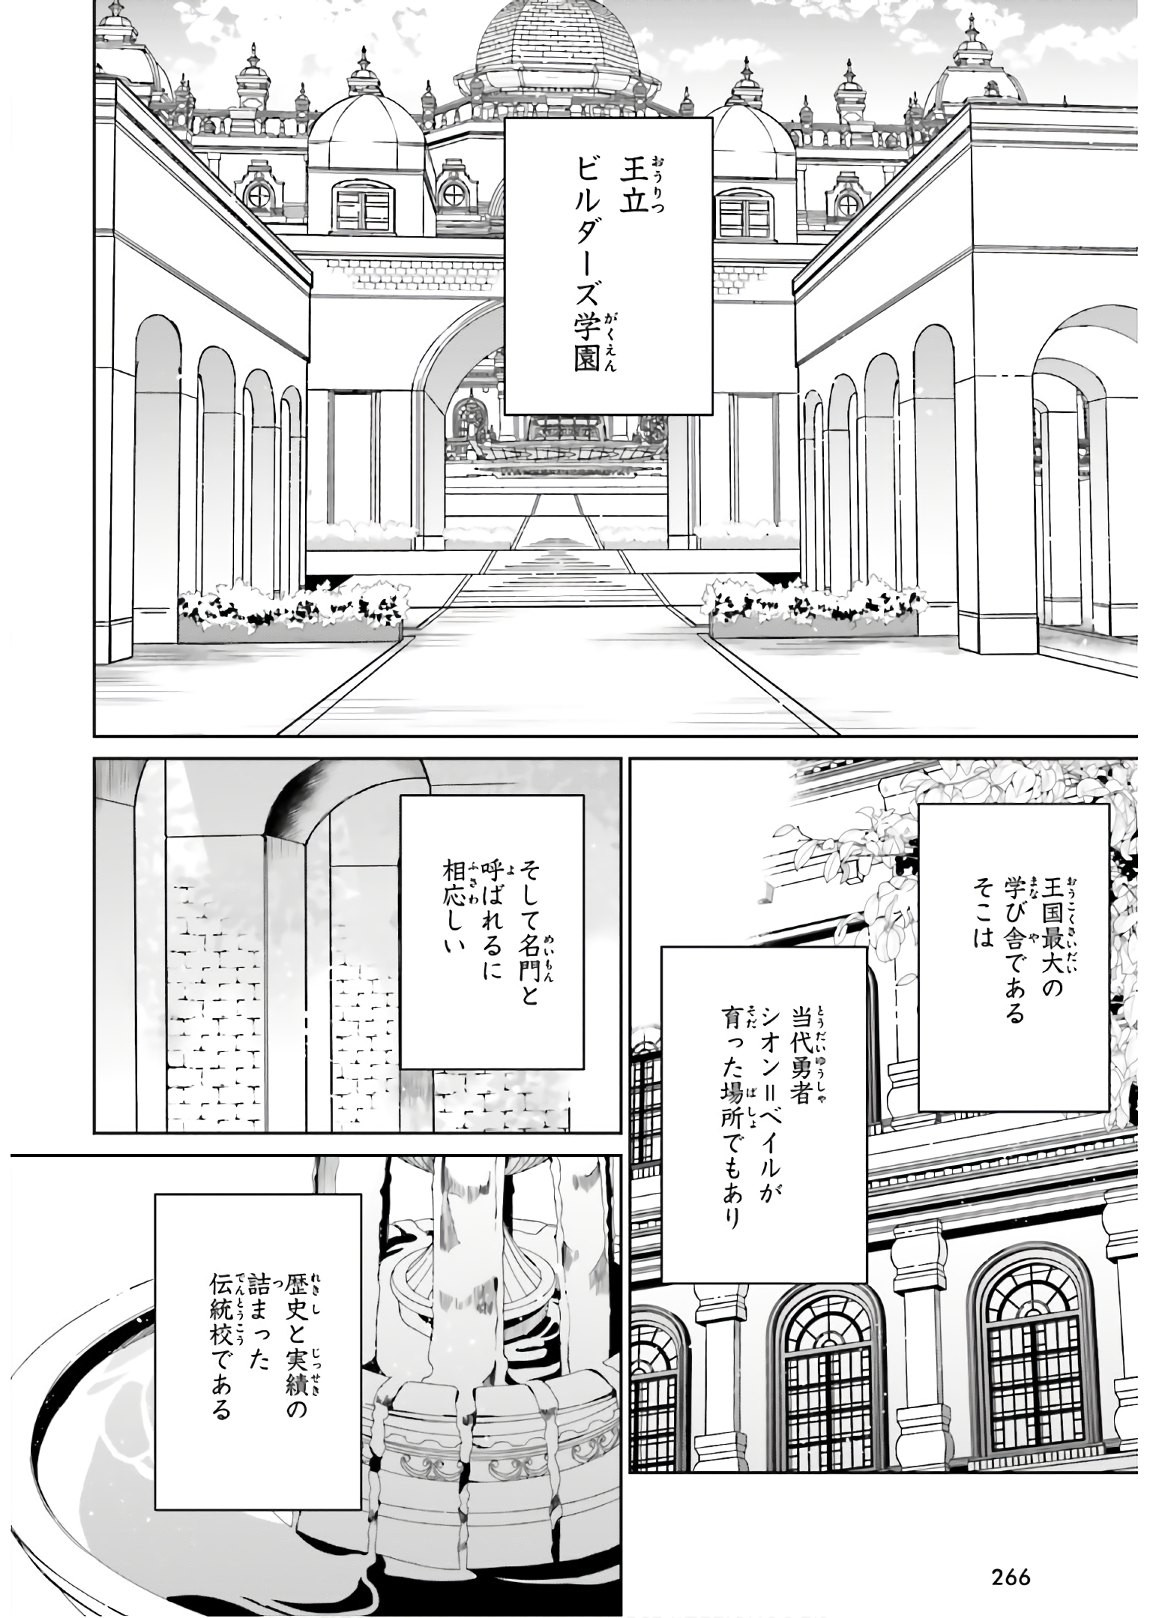 Kage-no-Eiyuu-no-Nichijou-tan-Ichi-no-Yuusha-no-Ura-de-An'yaku-Shite-ita-Saikyou-no-Eijento-Soshiki-ga-Kaitai-sareta-no-de-Shoutai-Kakushite-Hito-nami-no-Nichijou-o-Ouka-suru - Chapter 02 - Page 2